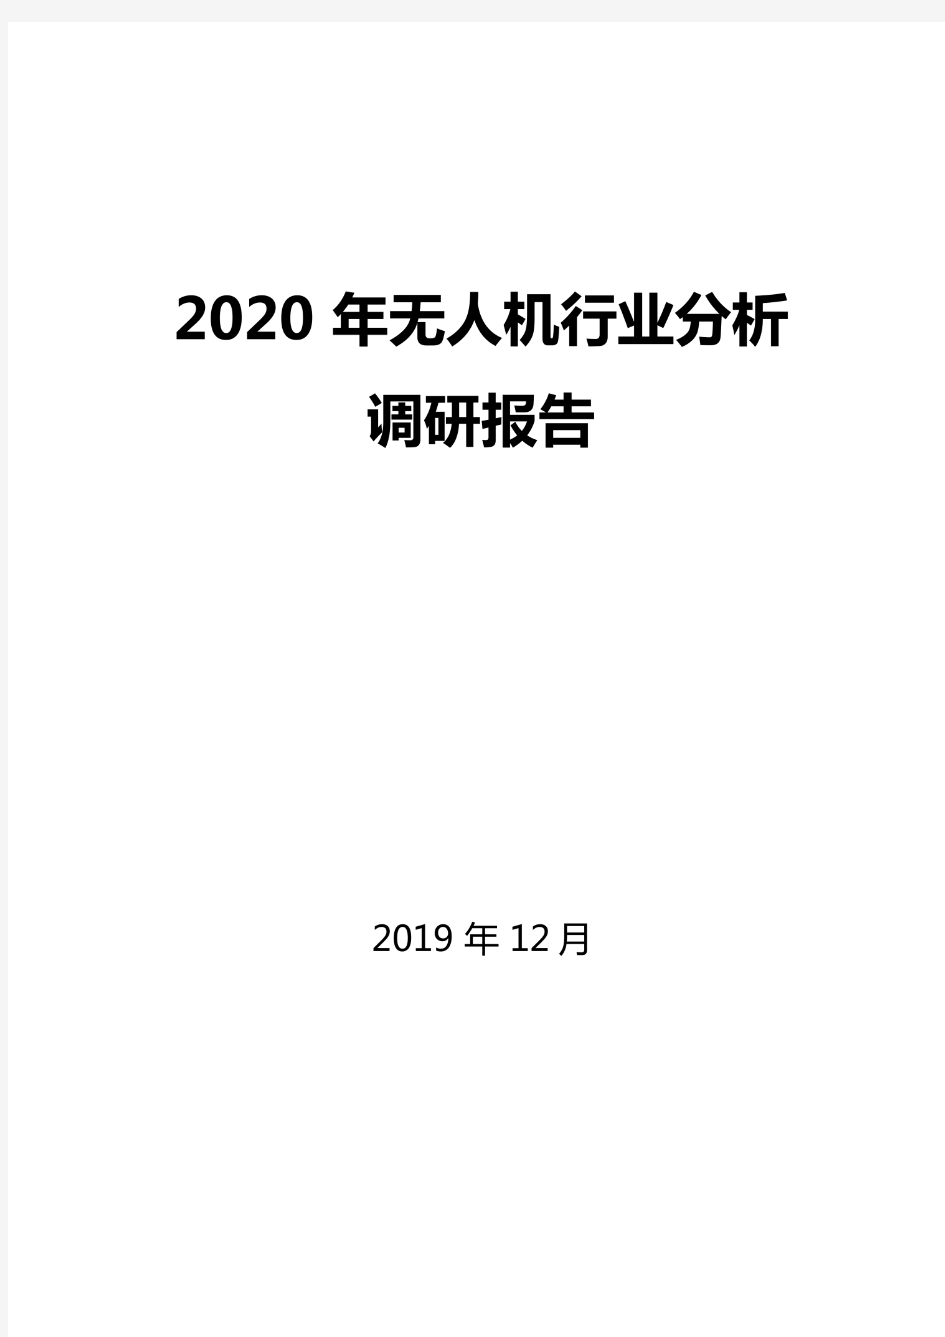 2020年无人机行业分析调研报告